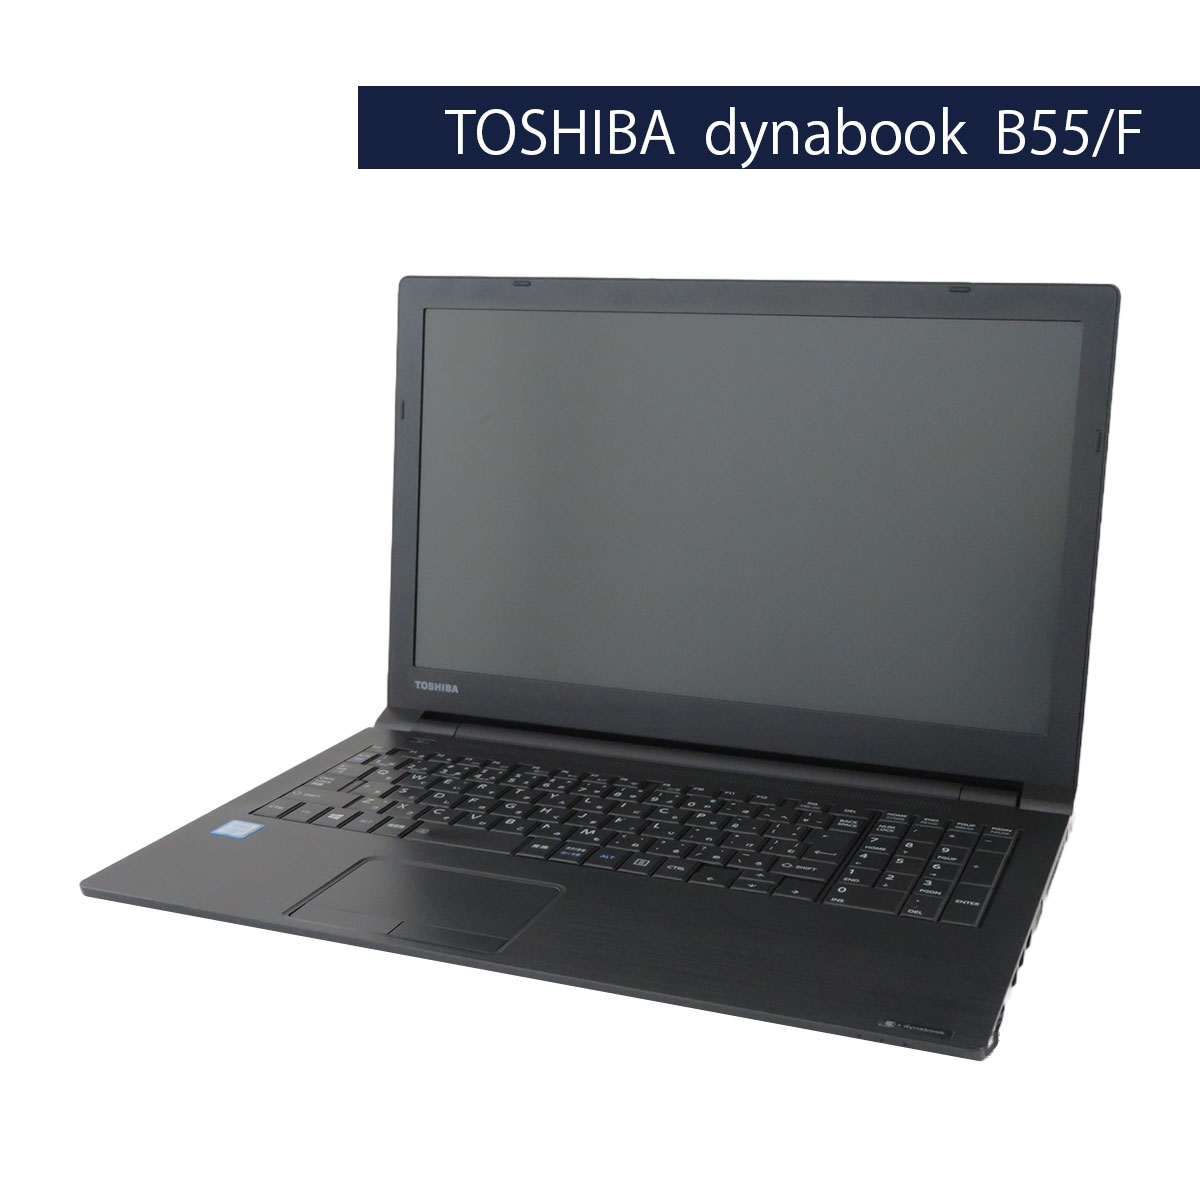 TOSHIBA dynabook B55/F Core i3 6100U 4GB 500GB Windows10 Pro 64Bit